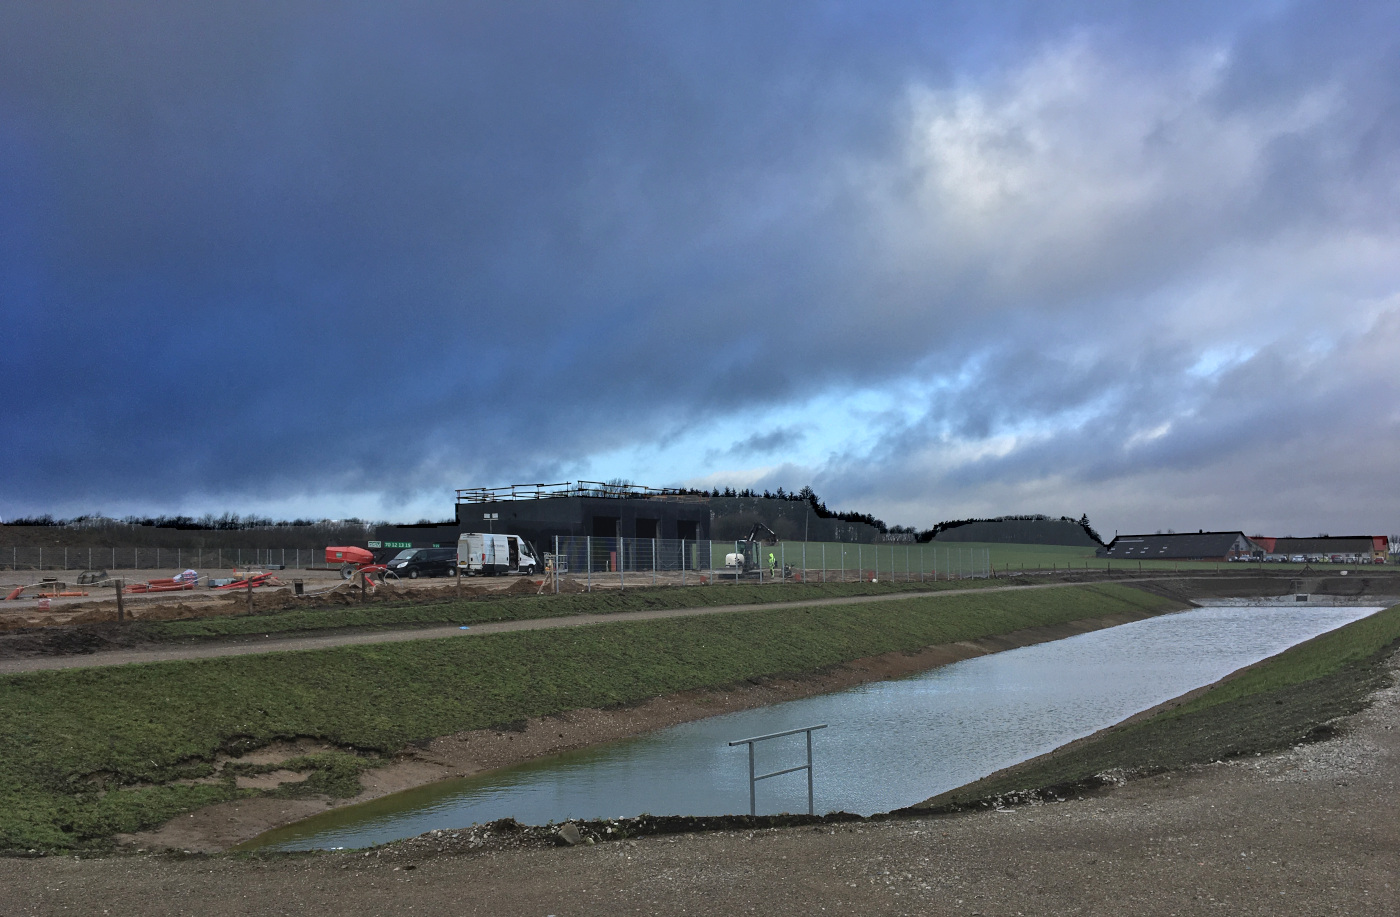 Transcend teknisk suge Plan for attraktivt erhvervsområde i Svenstrup i høring - Dansk Byudvikling